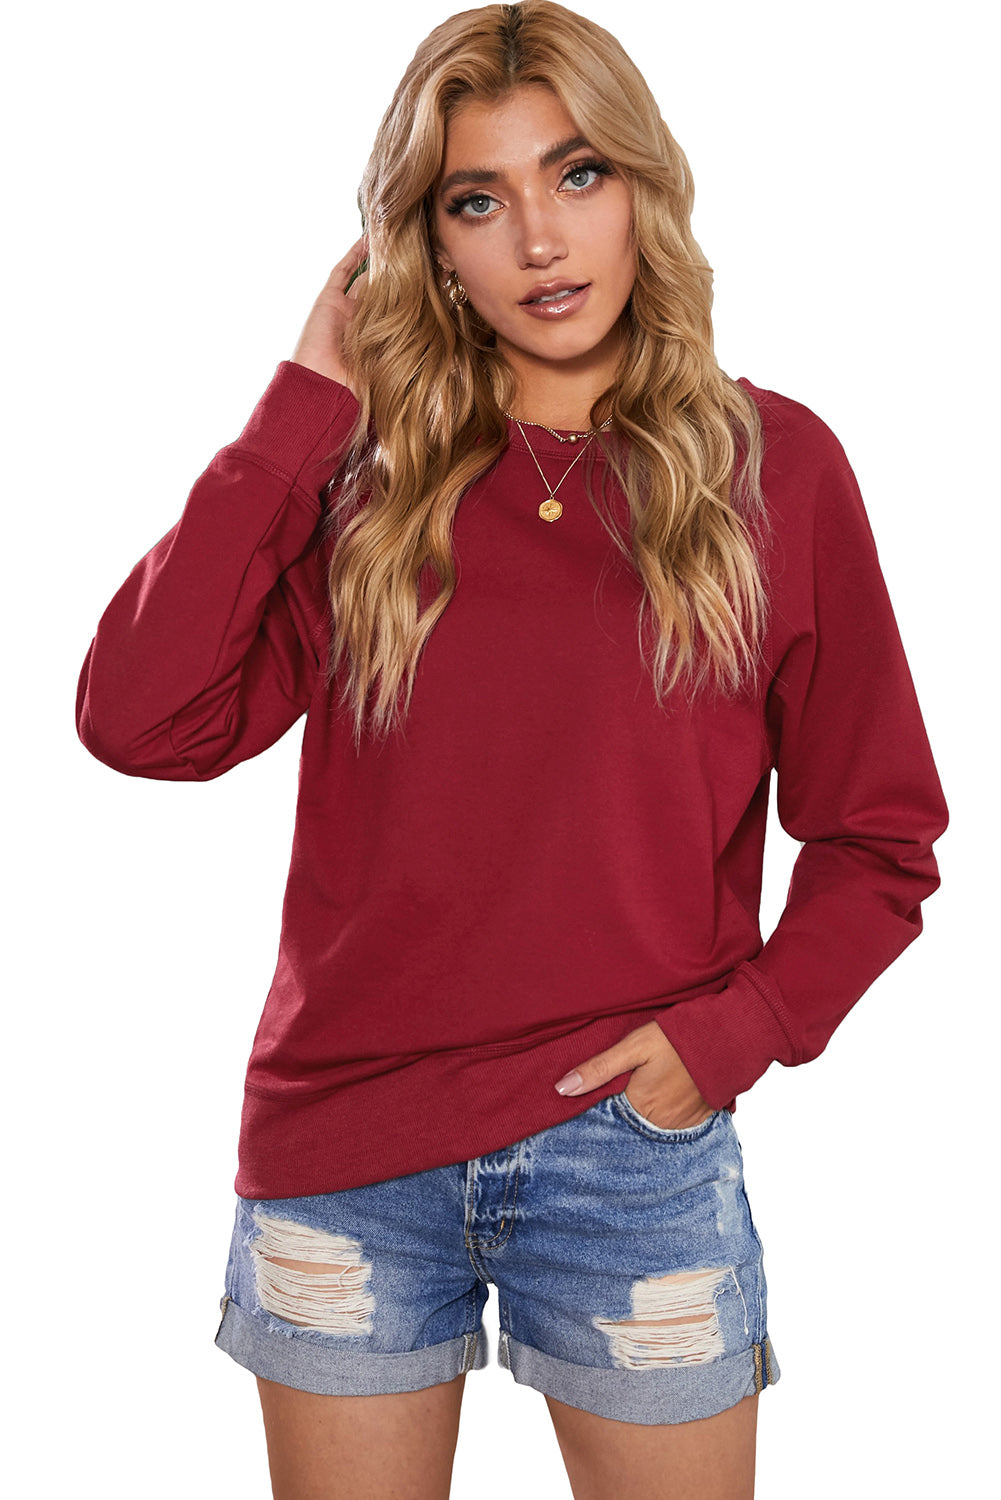 Weinrotes, einfarbiges Pullover-Sweatshirt mit Rundhalsausschnitt